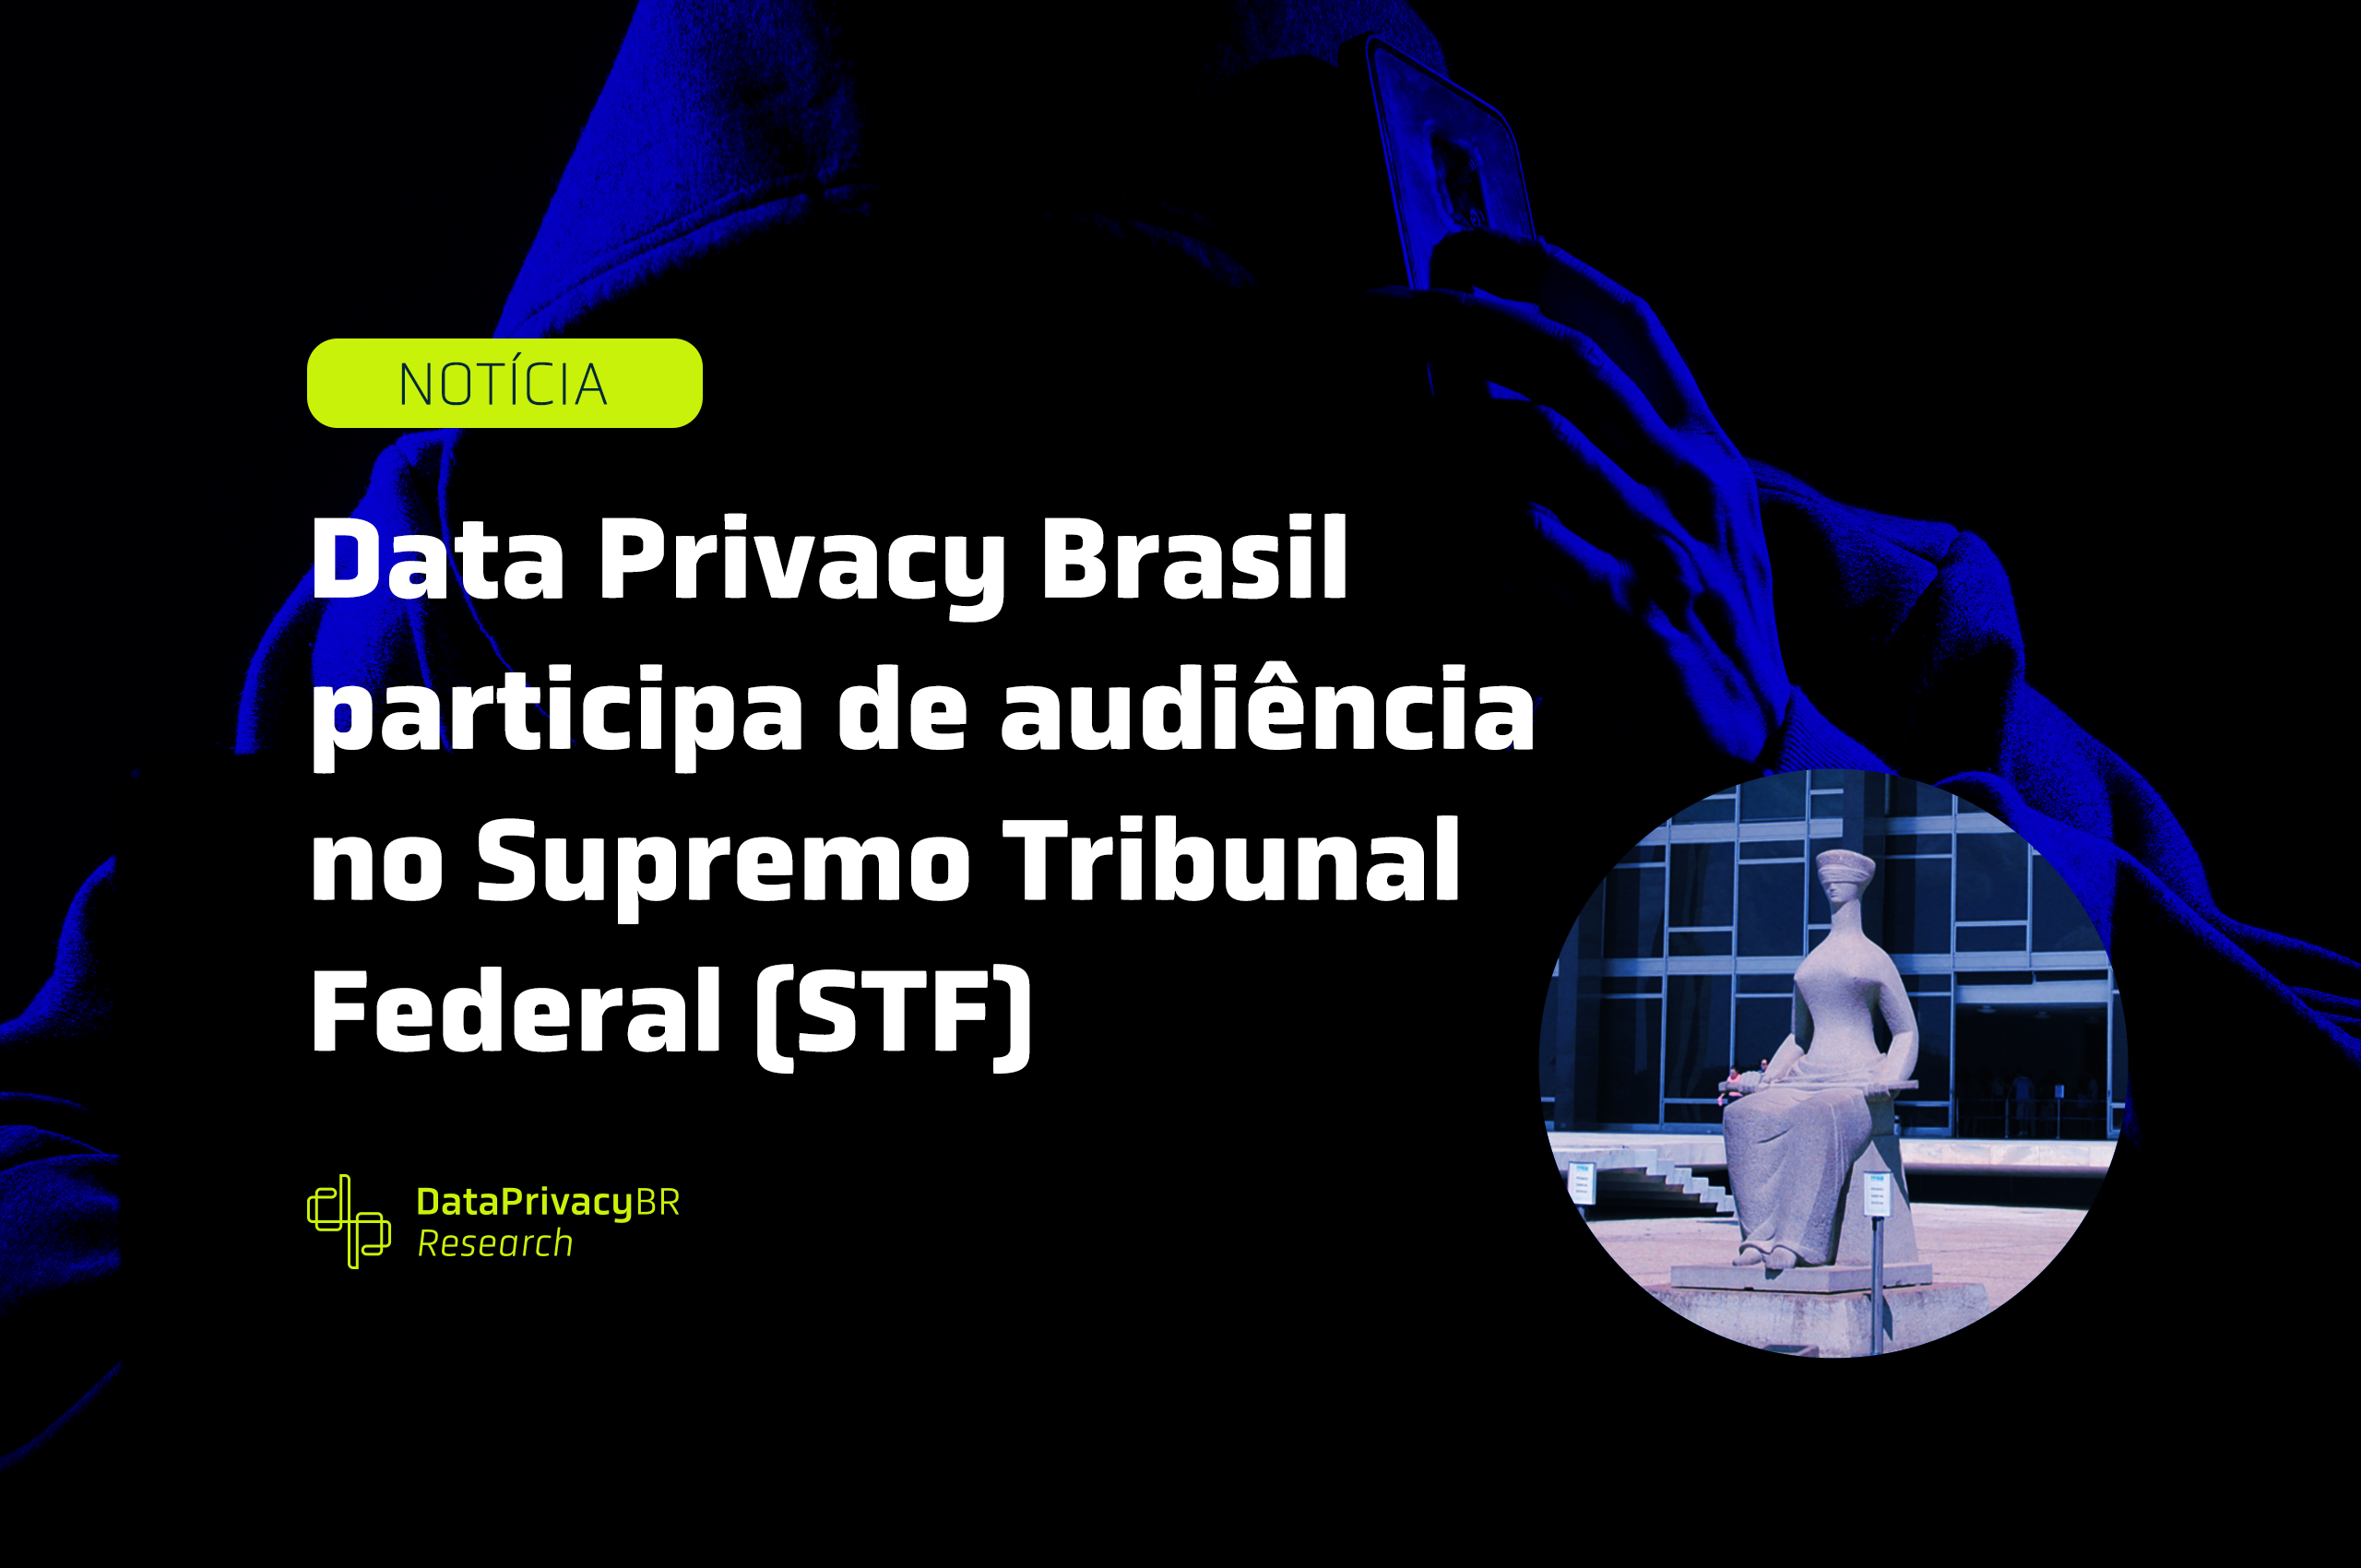 Data Privacy Brasil participa de audiência no Supremo Tribunal Federal (STF) que discutiu o uso de ferramentas de monitoramento secreto